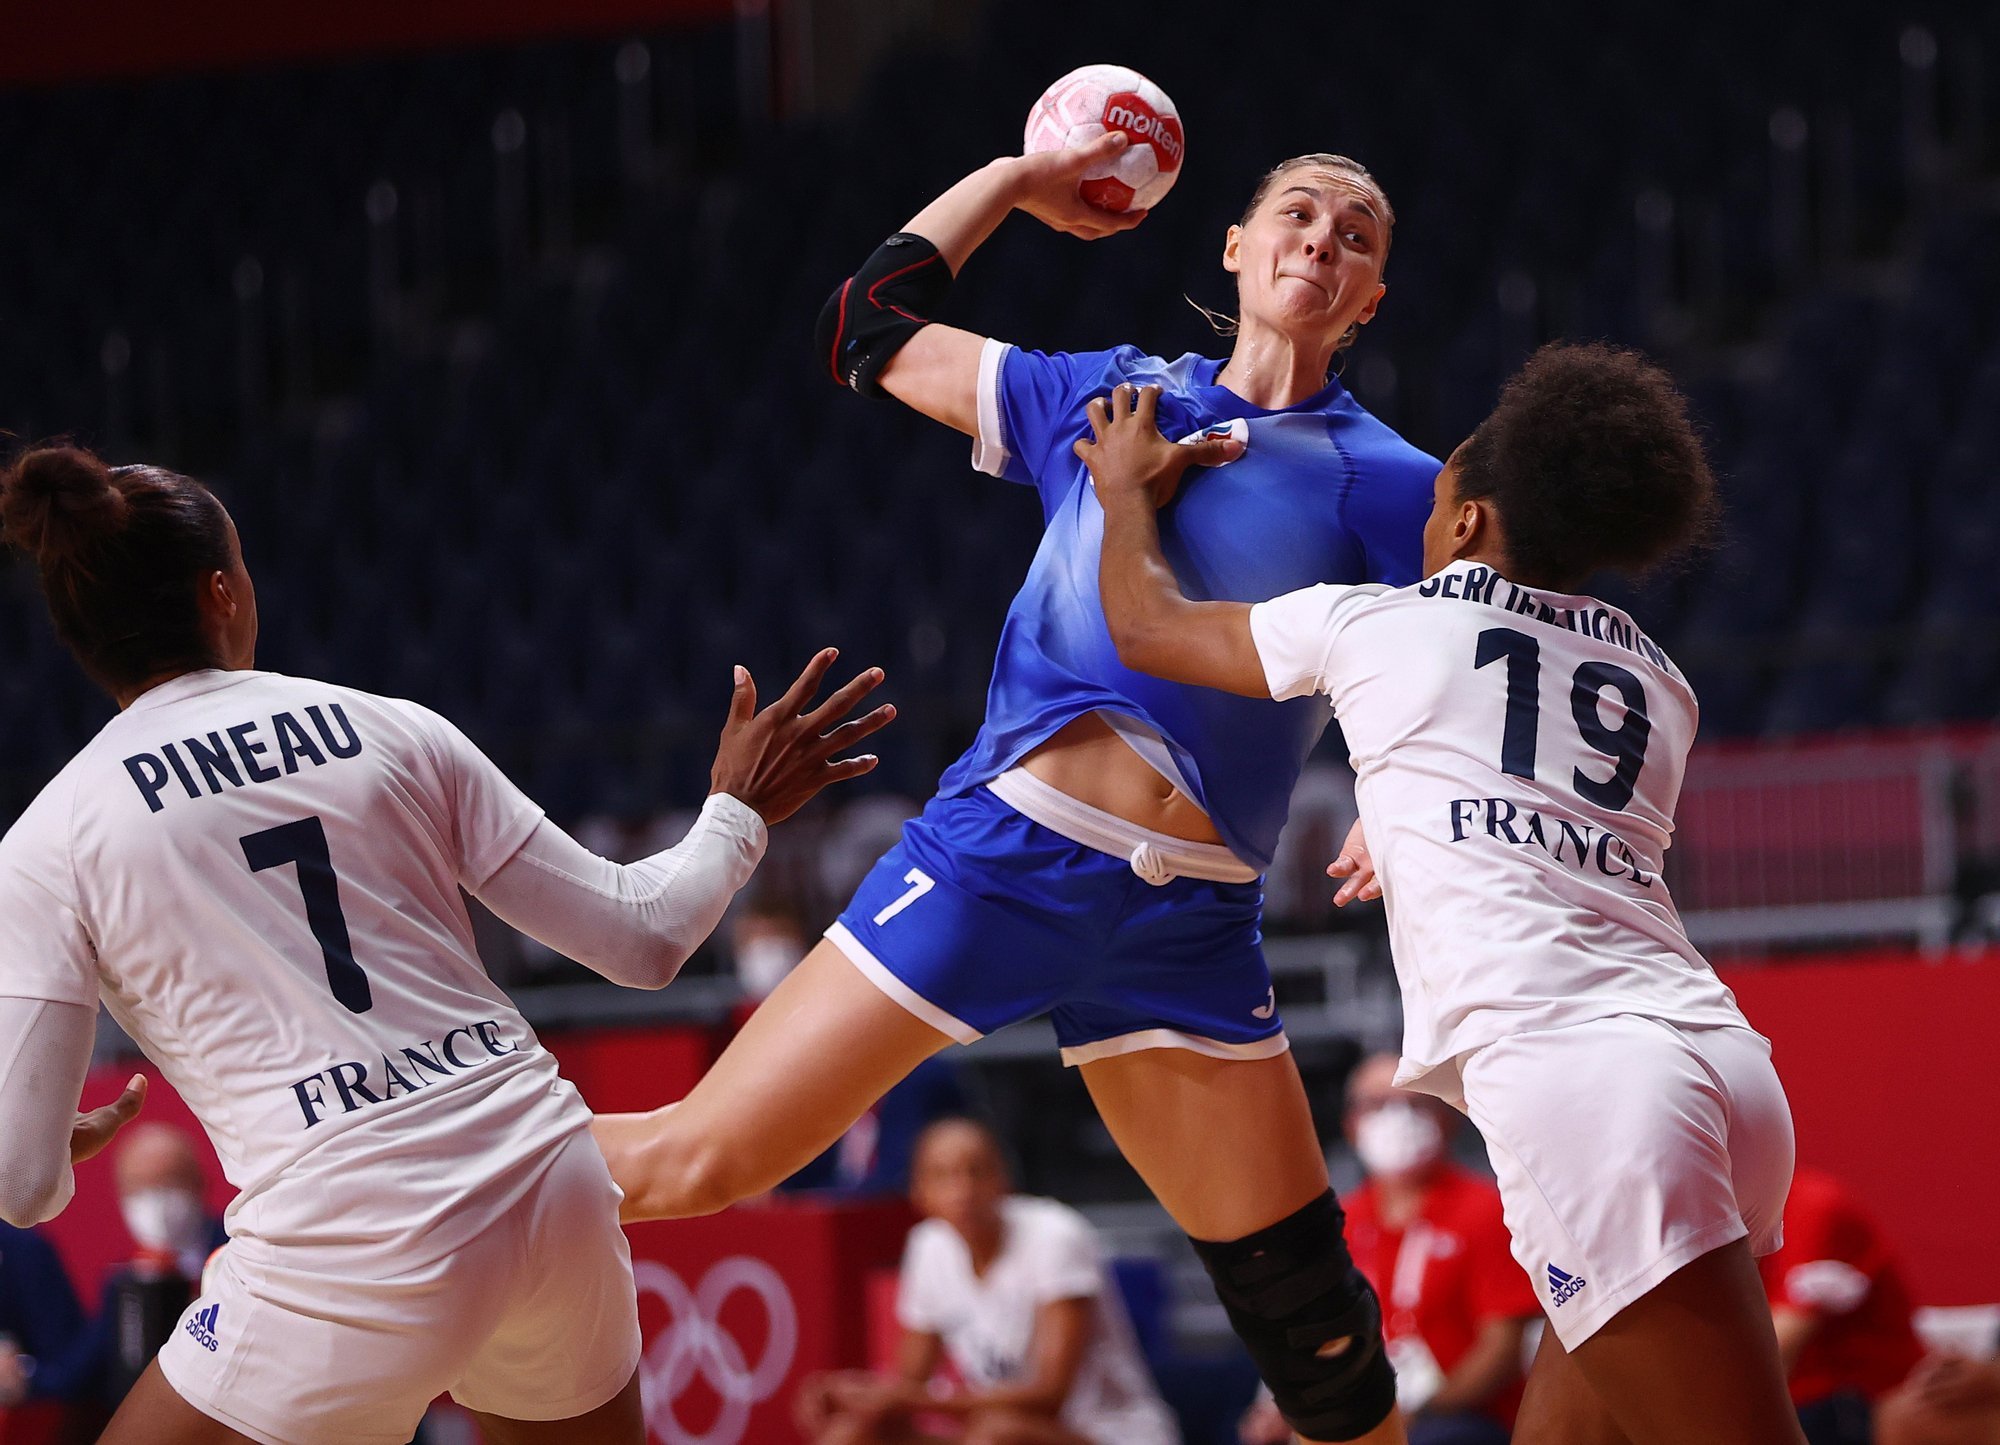 Олимпиада 2020 гандбол команда Франция женщины